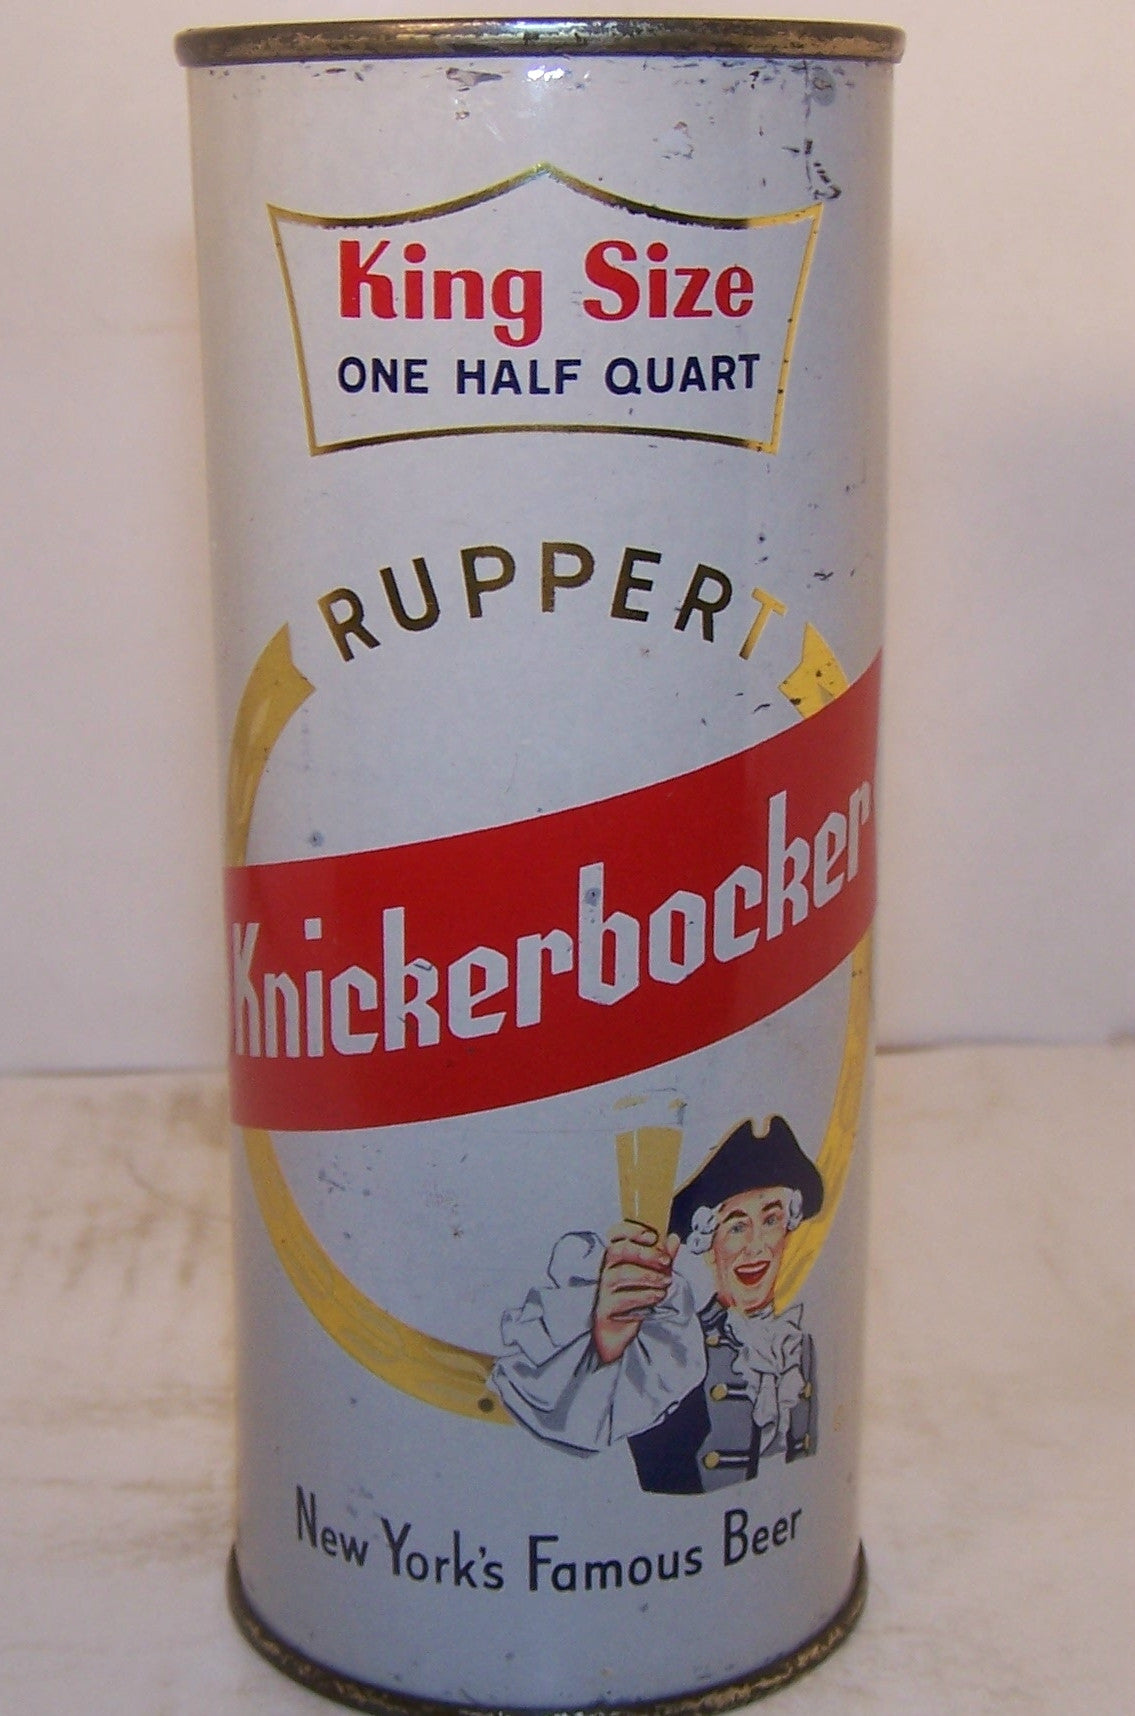 Ruppert Knickerbocker King Size, USBC 231-17, Grade 1/1- Sold on 2/11/15